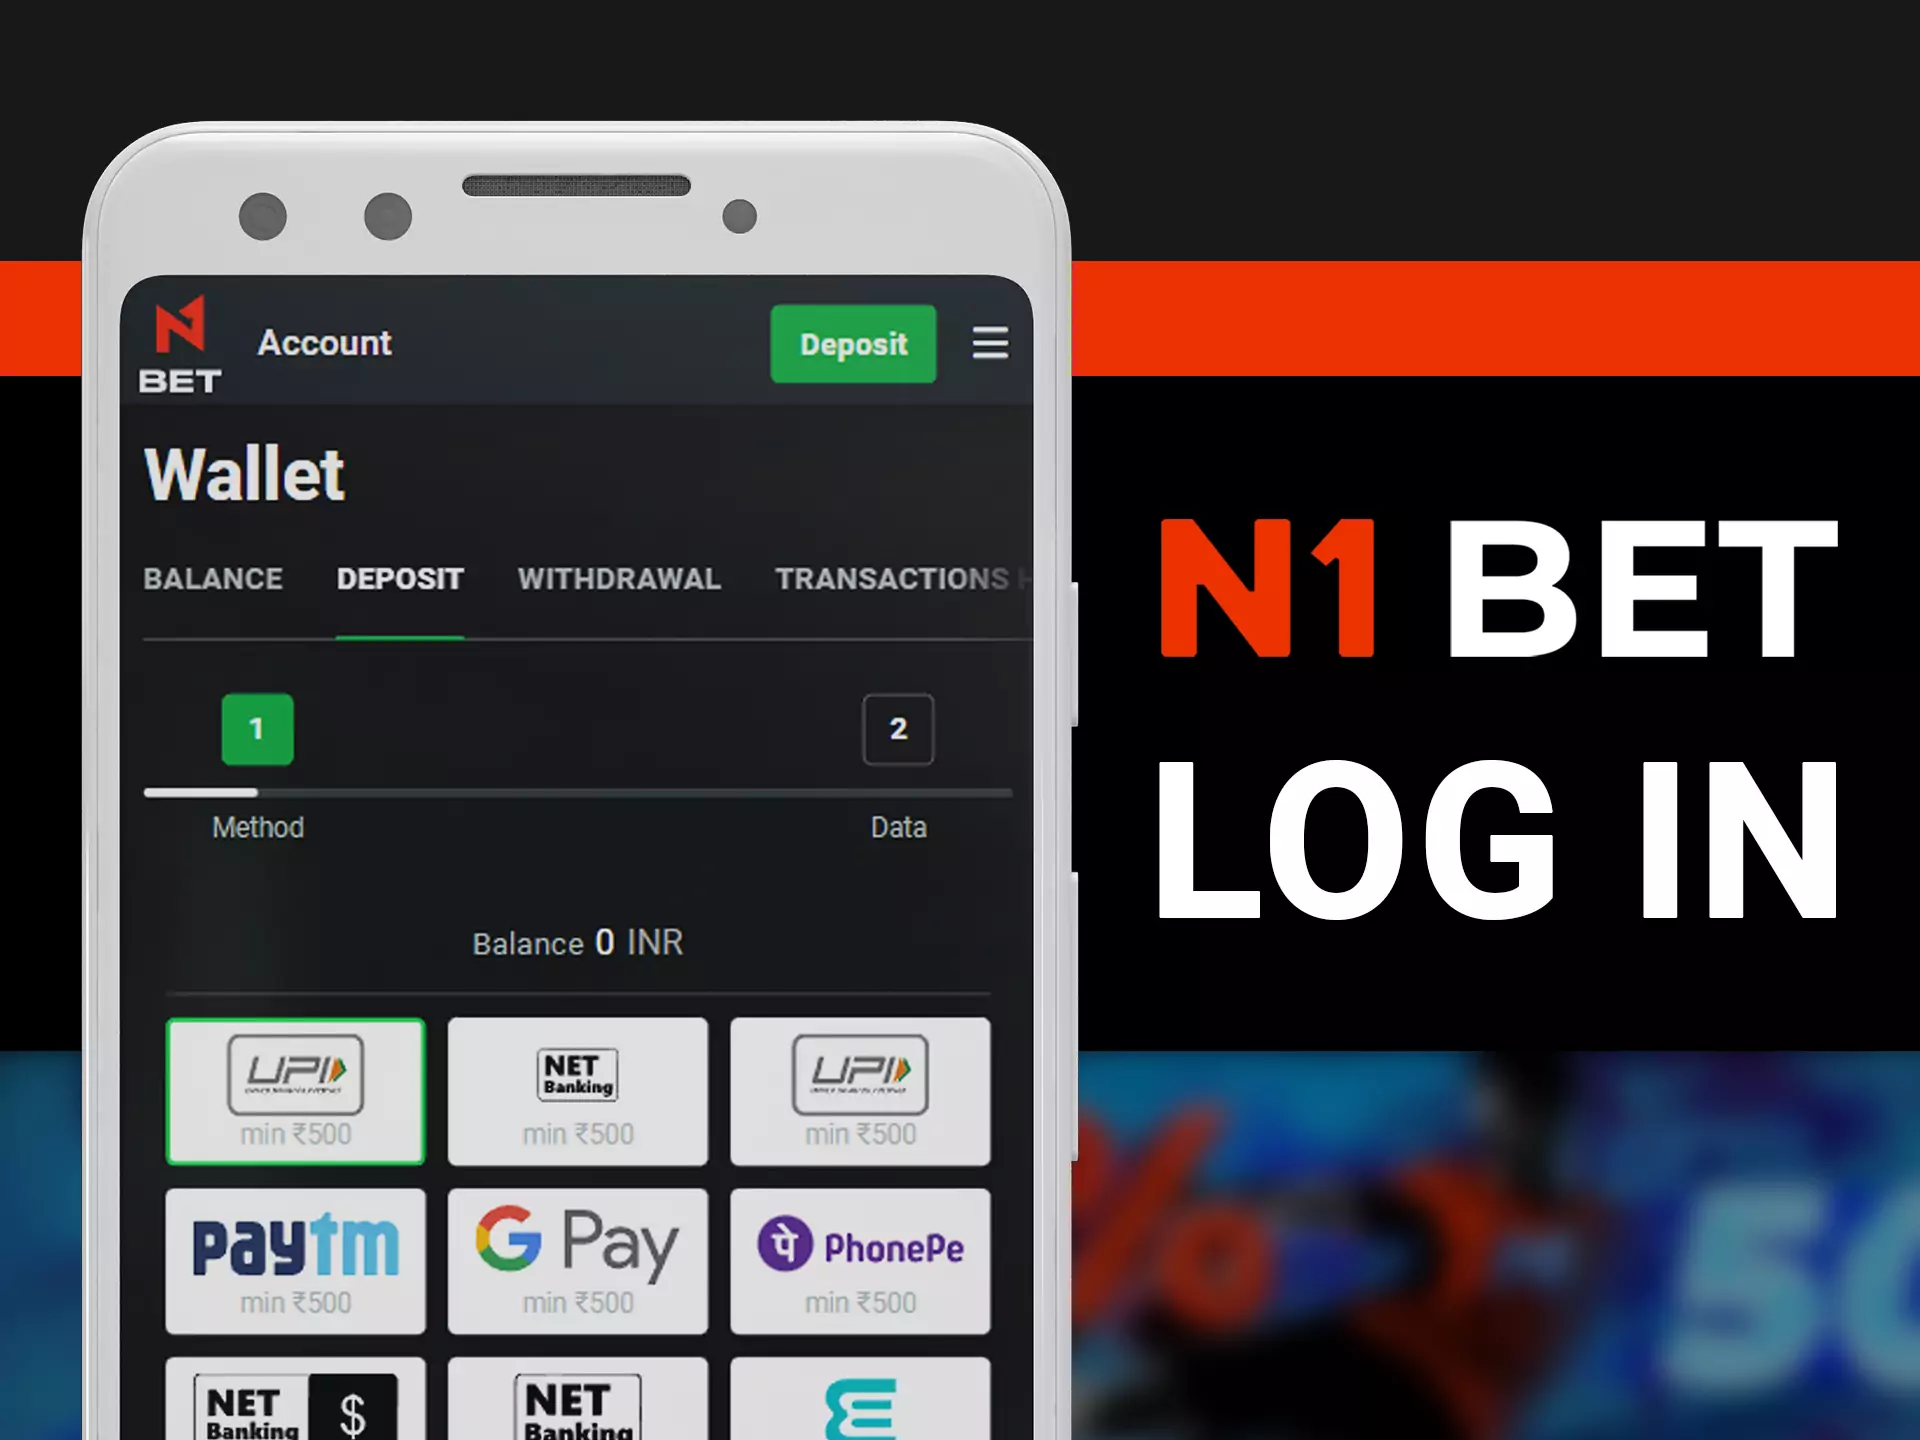 Log in N1Bet app for start betting.